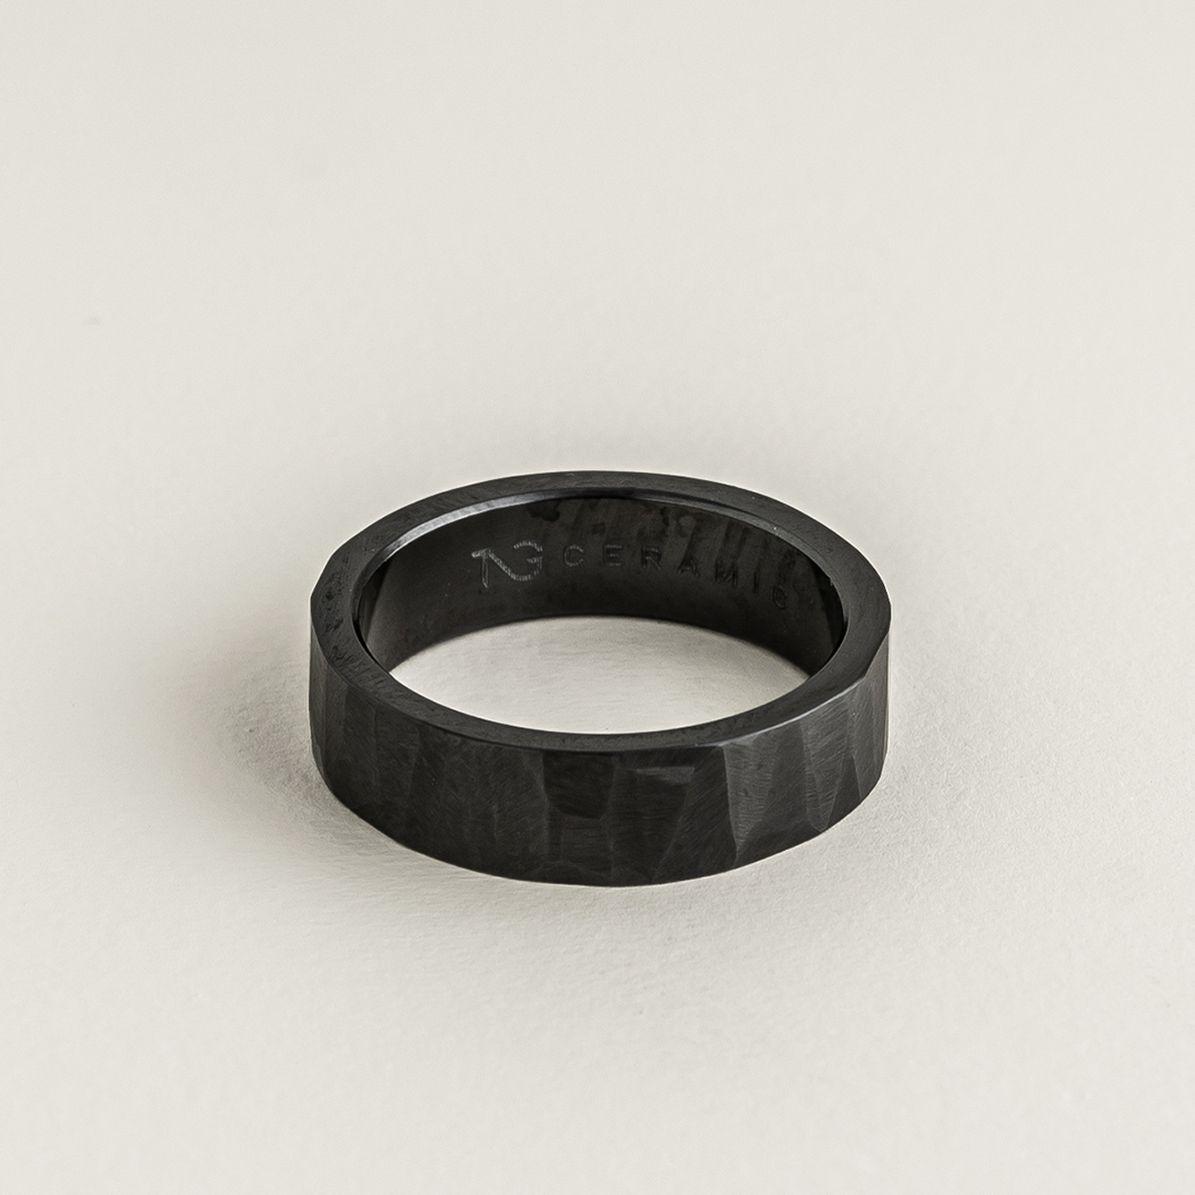 Matte Black Bts Jung kook name Craved Ring For Men